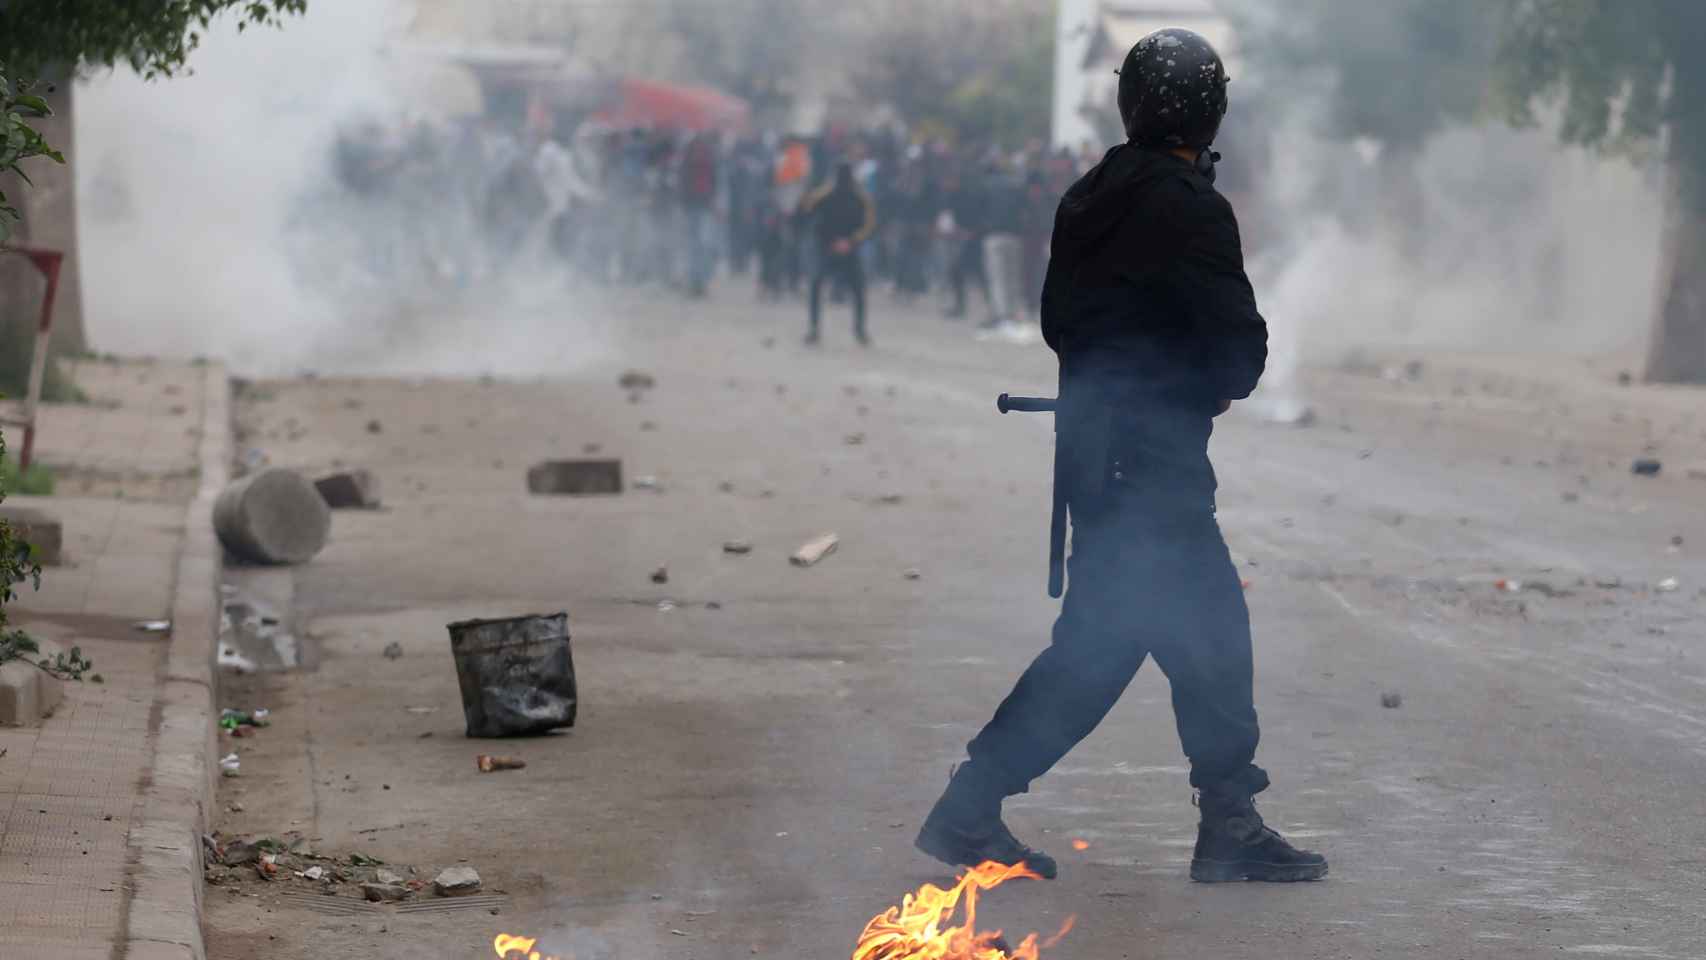 Un agente lanza gas lacrimógeno a manifestantes en la ciudad de Tebourba